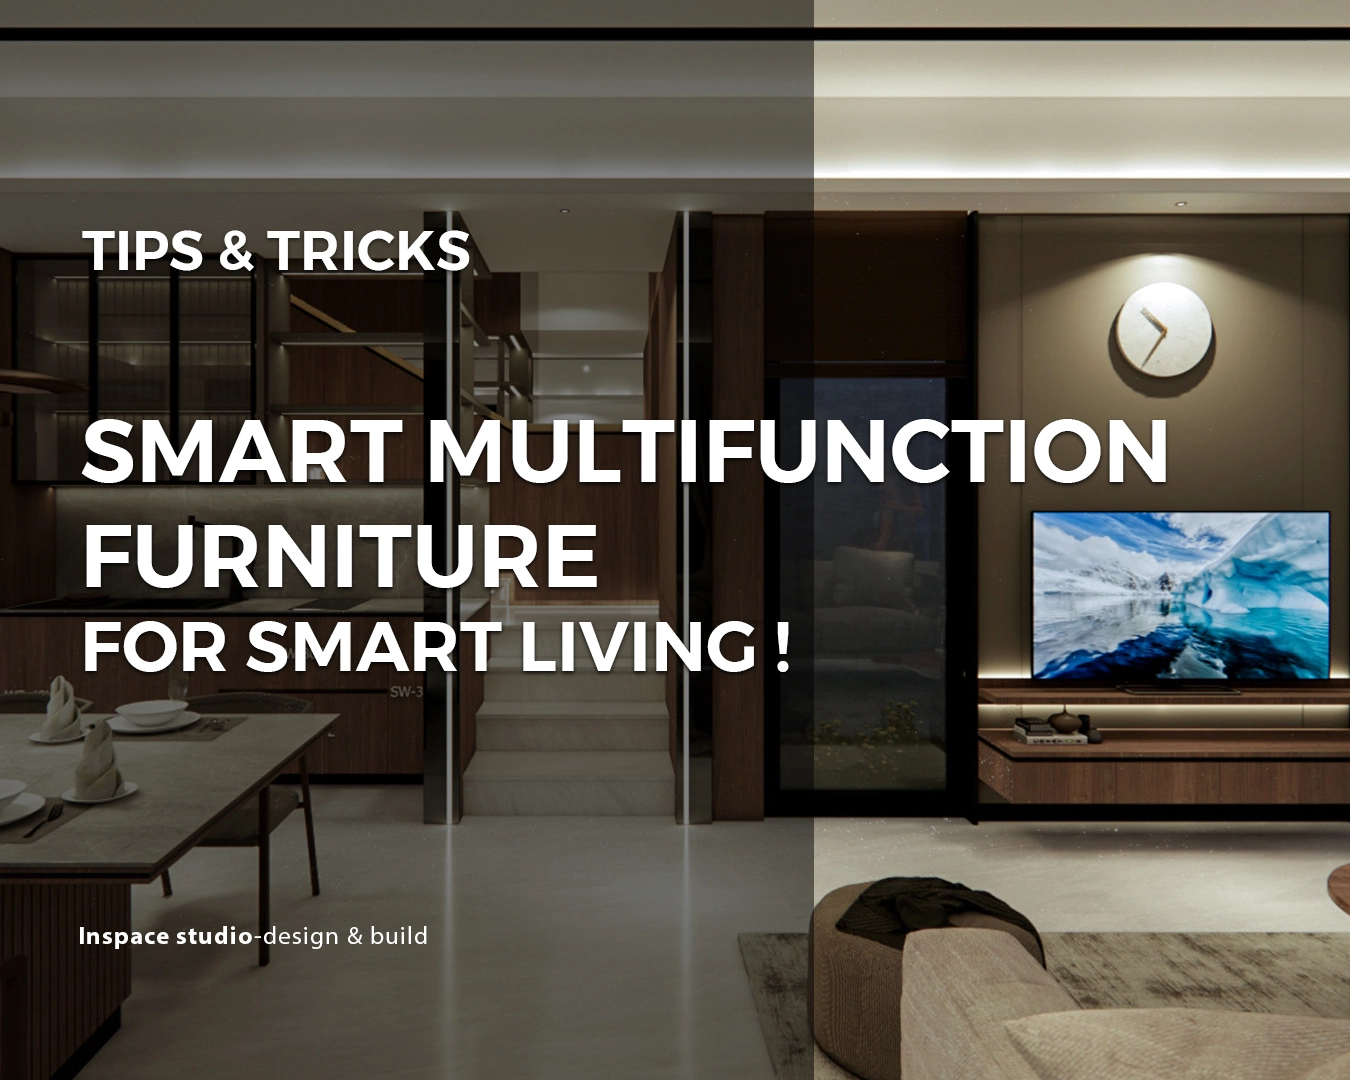 Smart multifunction furniture for smart living